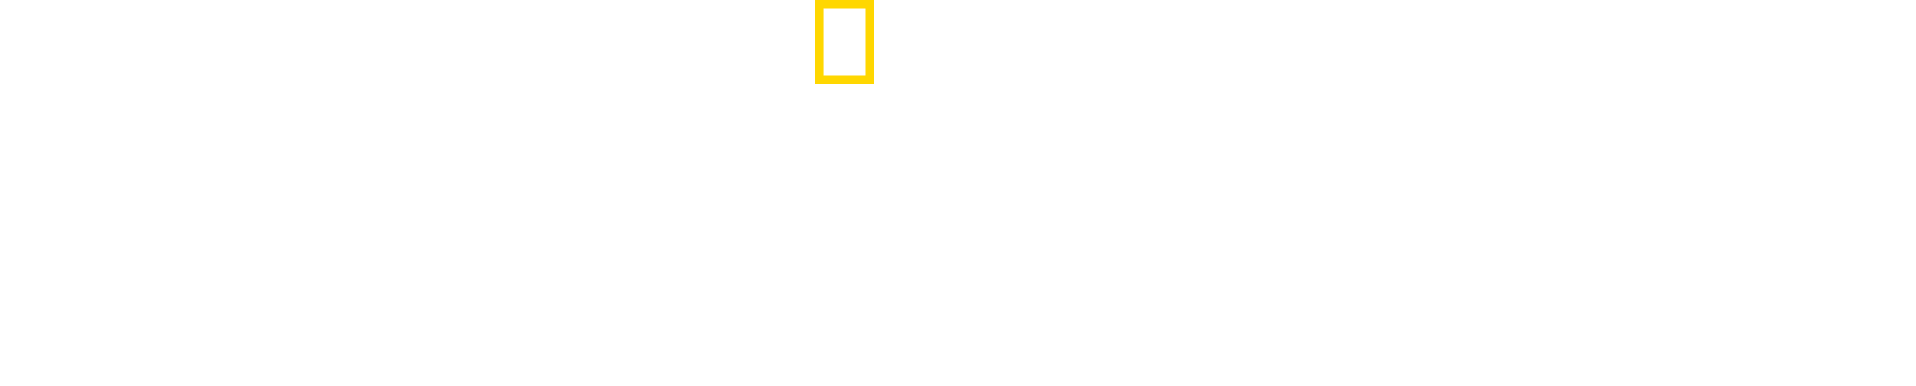 Into the Grand Canyon logo